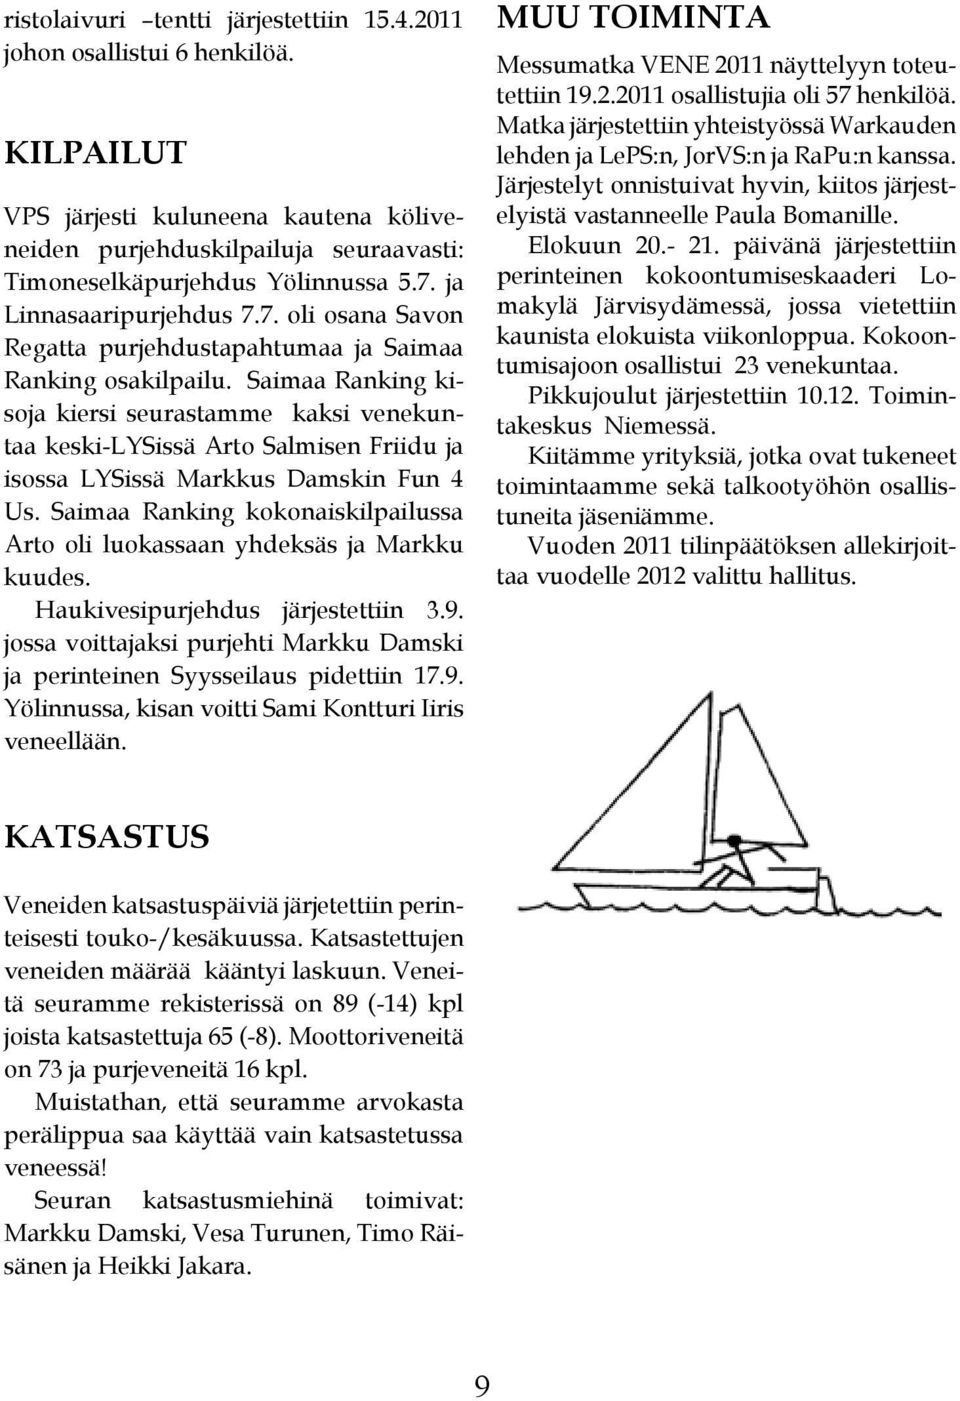 Saimaa Ranking kisoja kiersi seurastamme kaksi venekuntaa keski-lysissä Arto Salmisen Friidu ja isossa LYSissä Markkus Damskin Fun 4 Us.